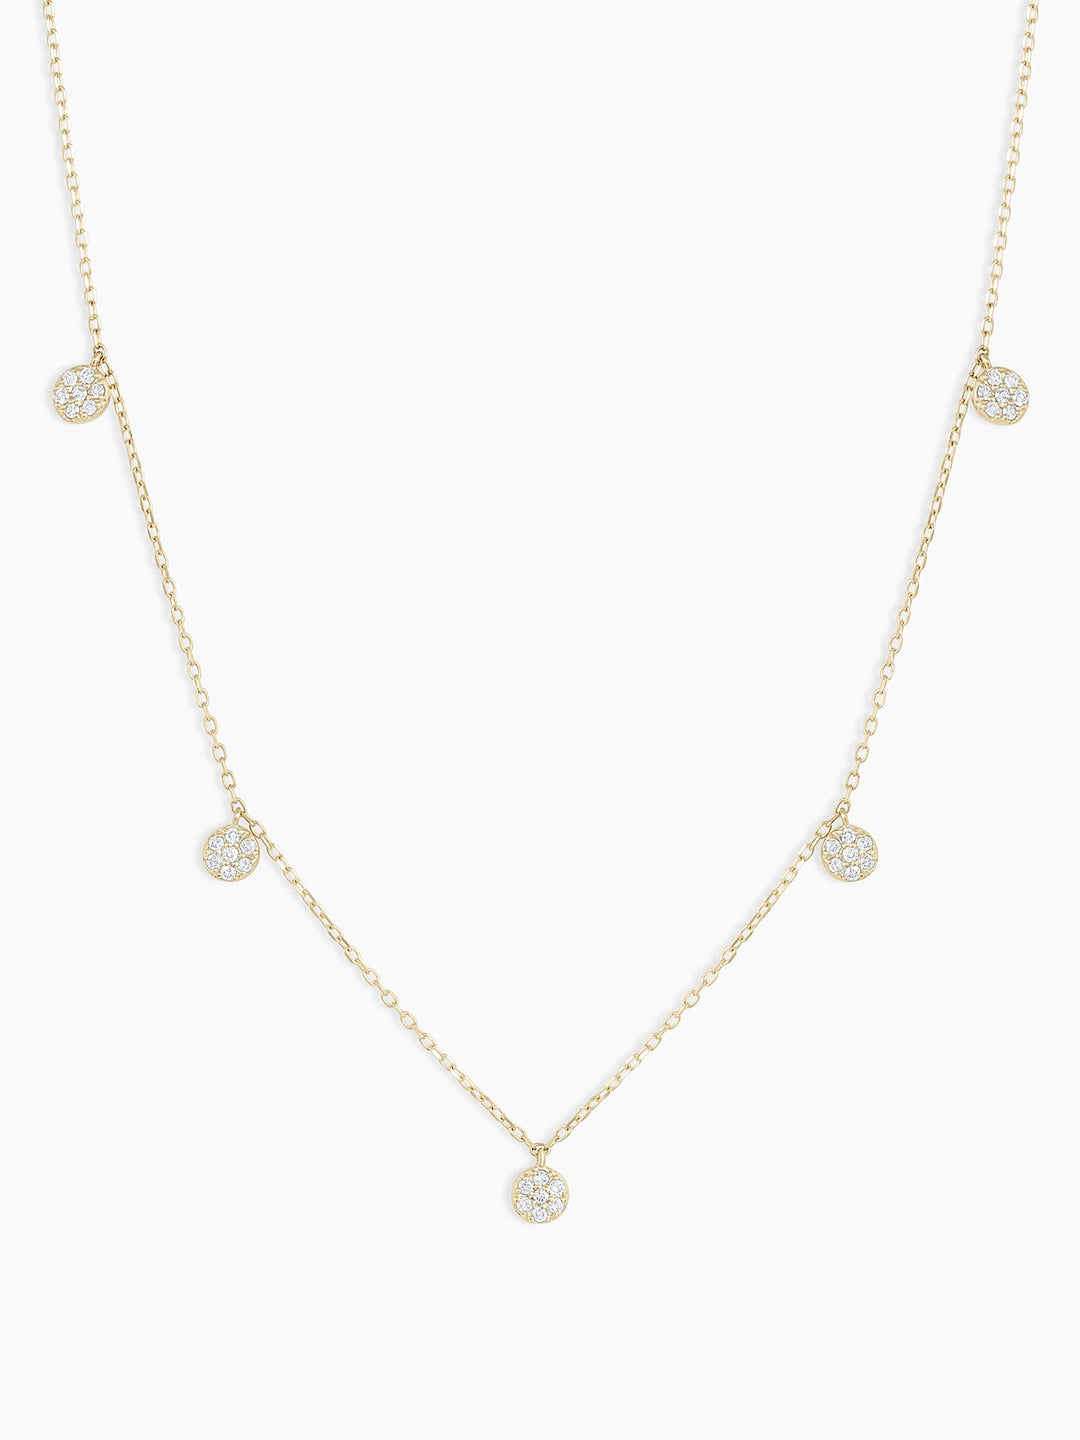 Diamond Pavé Flutter NecklaceDiamond Necklace || option::14k Solid Gold